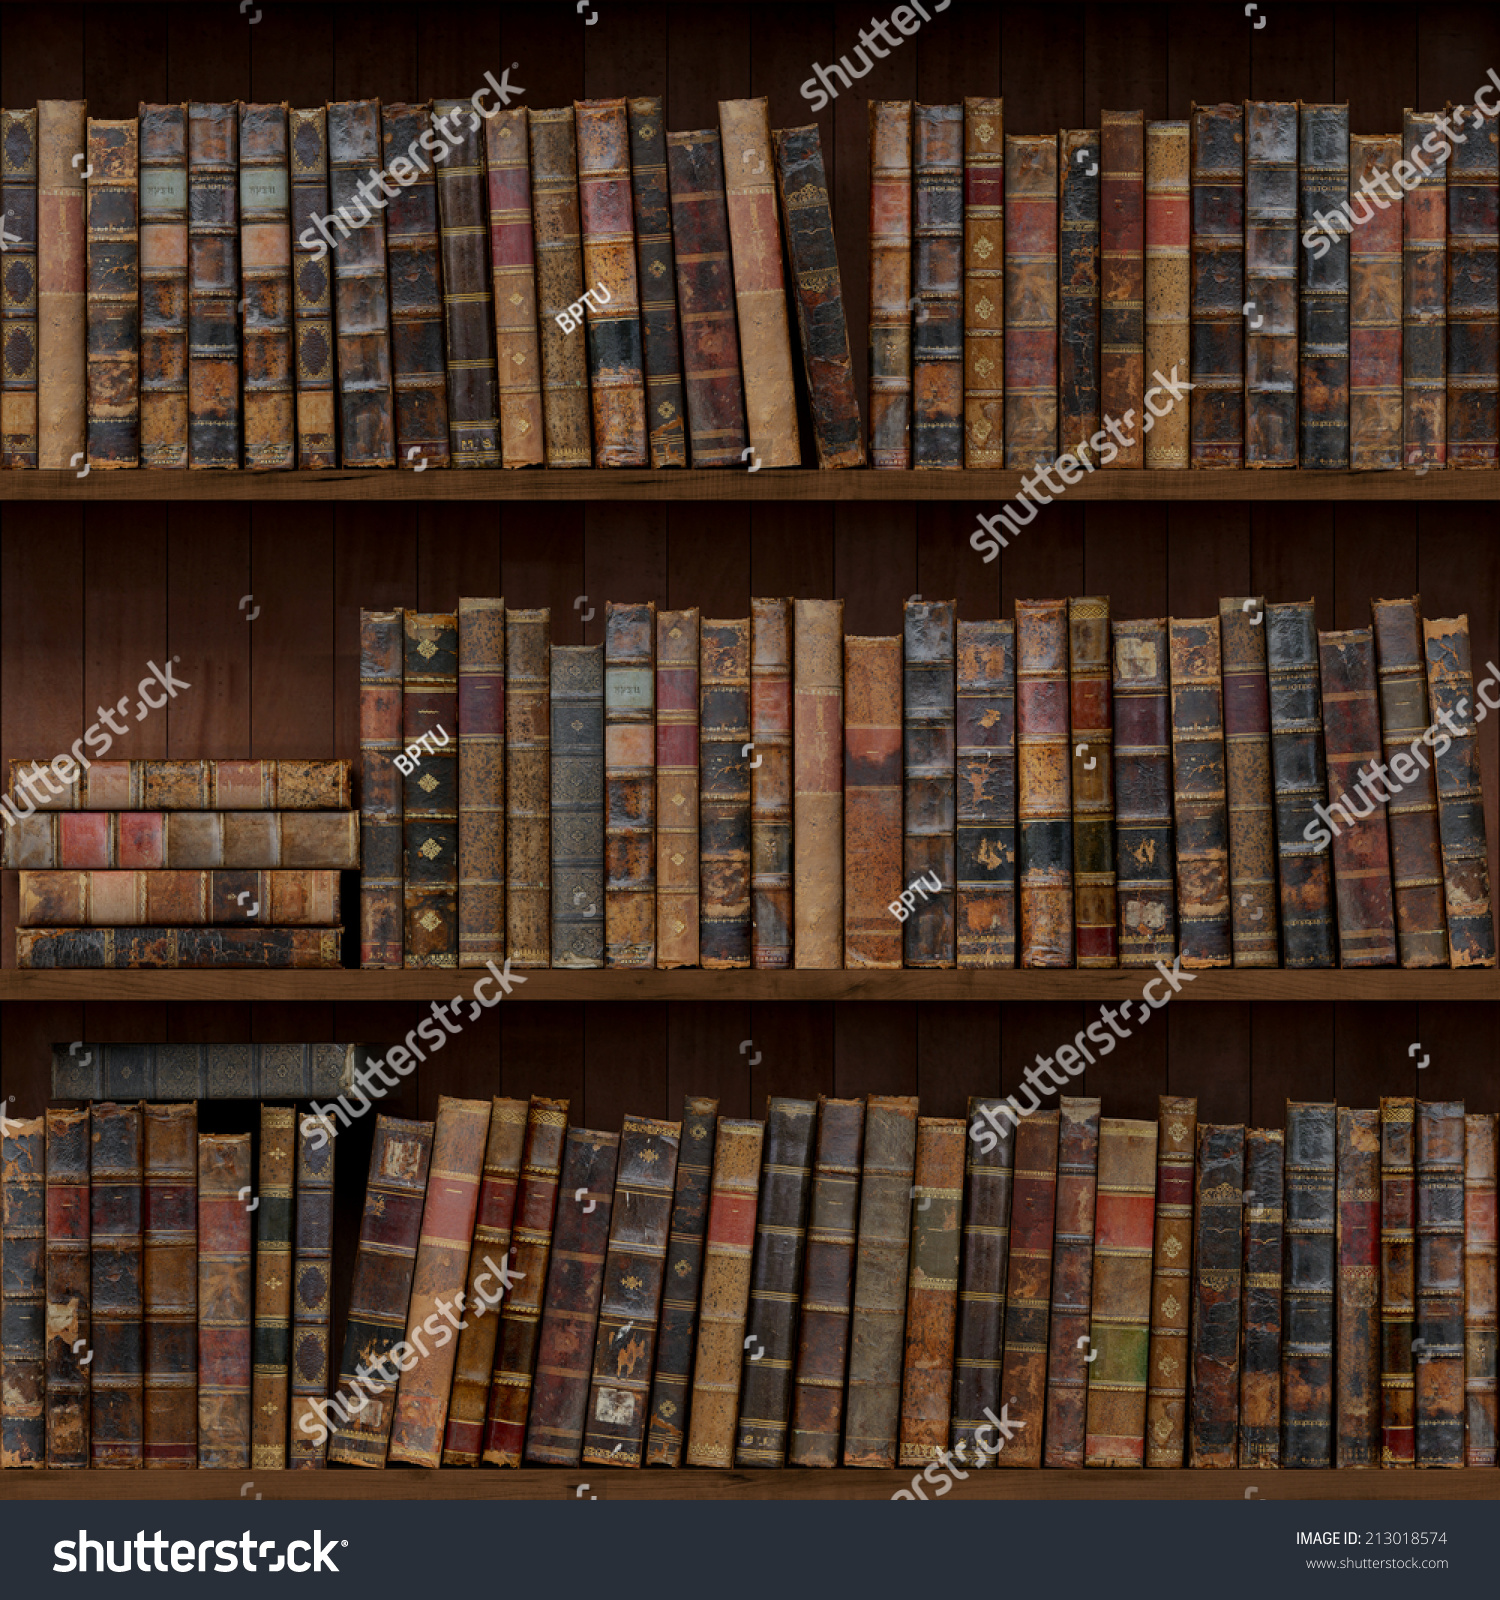 8 15 Old Books Seamless Texture Stock Illustration 213018574 - Shutterstock